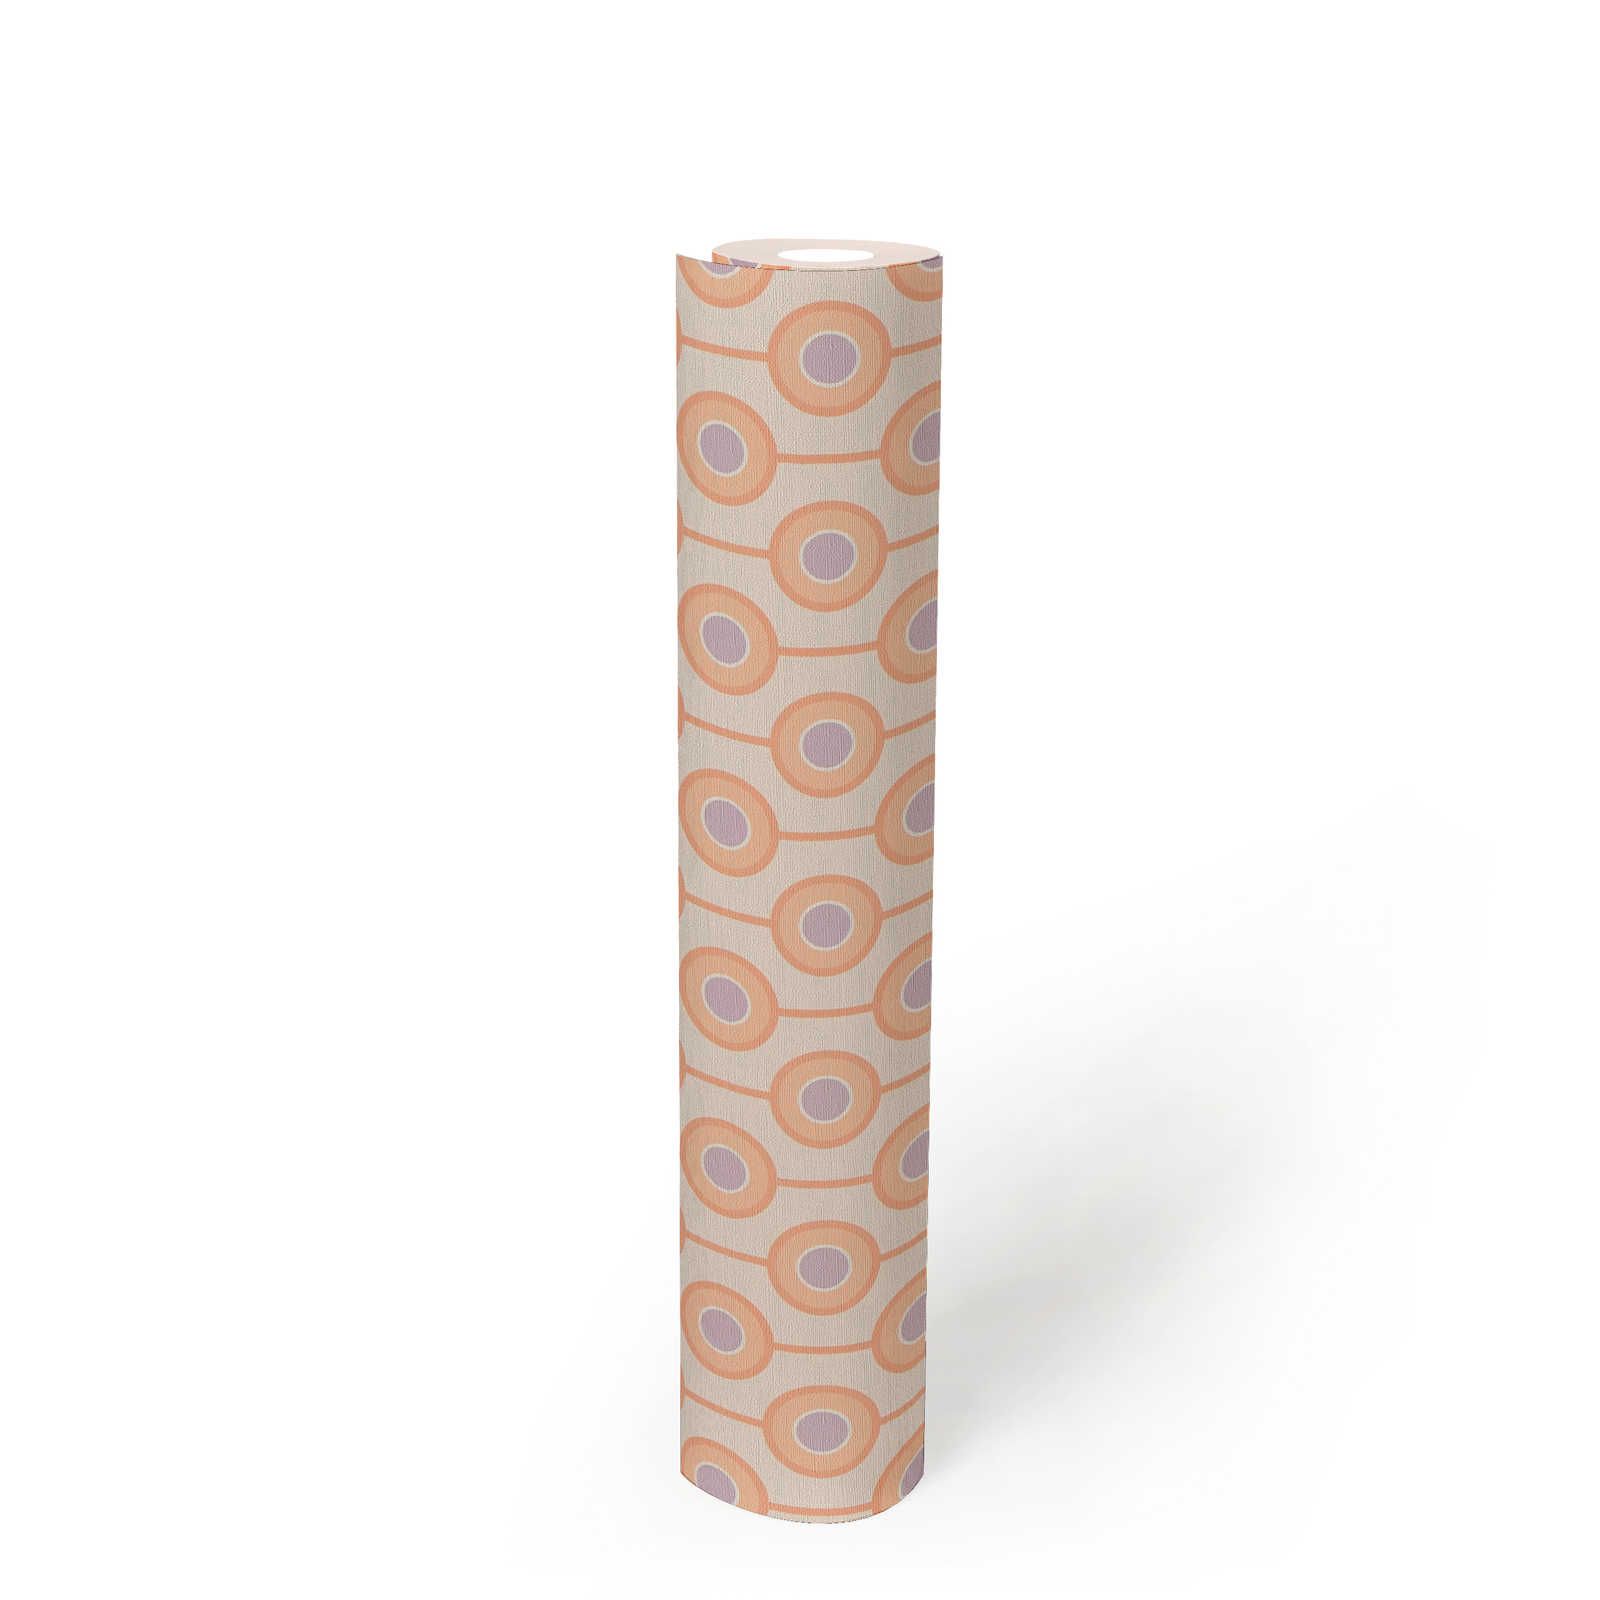             papier peint en papier intissé avec motifs circulaires dans des couleurs douces - beige, orange, violet
        